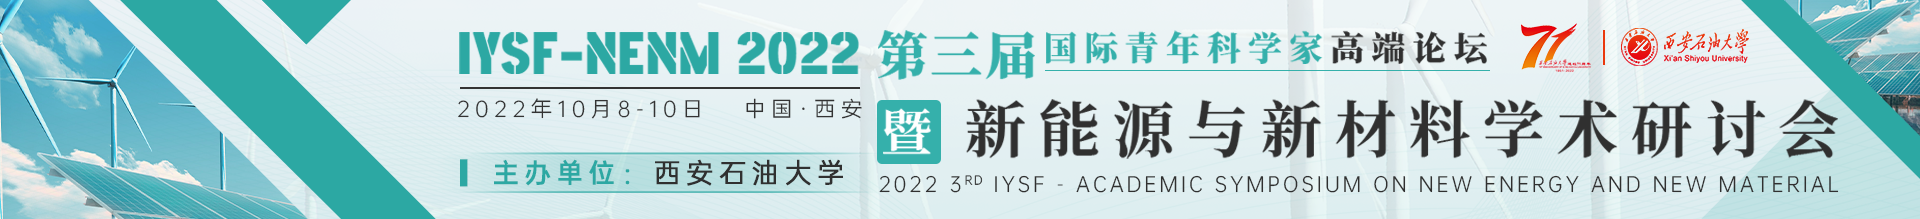 10月西安IYSF-NENM 2022会议云banner-20220606.png